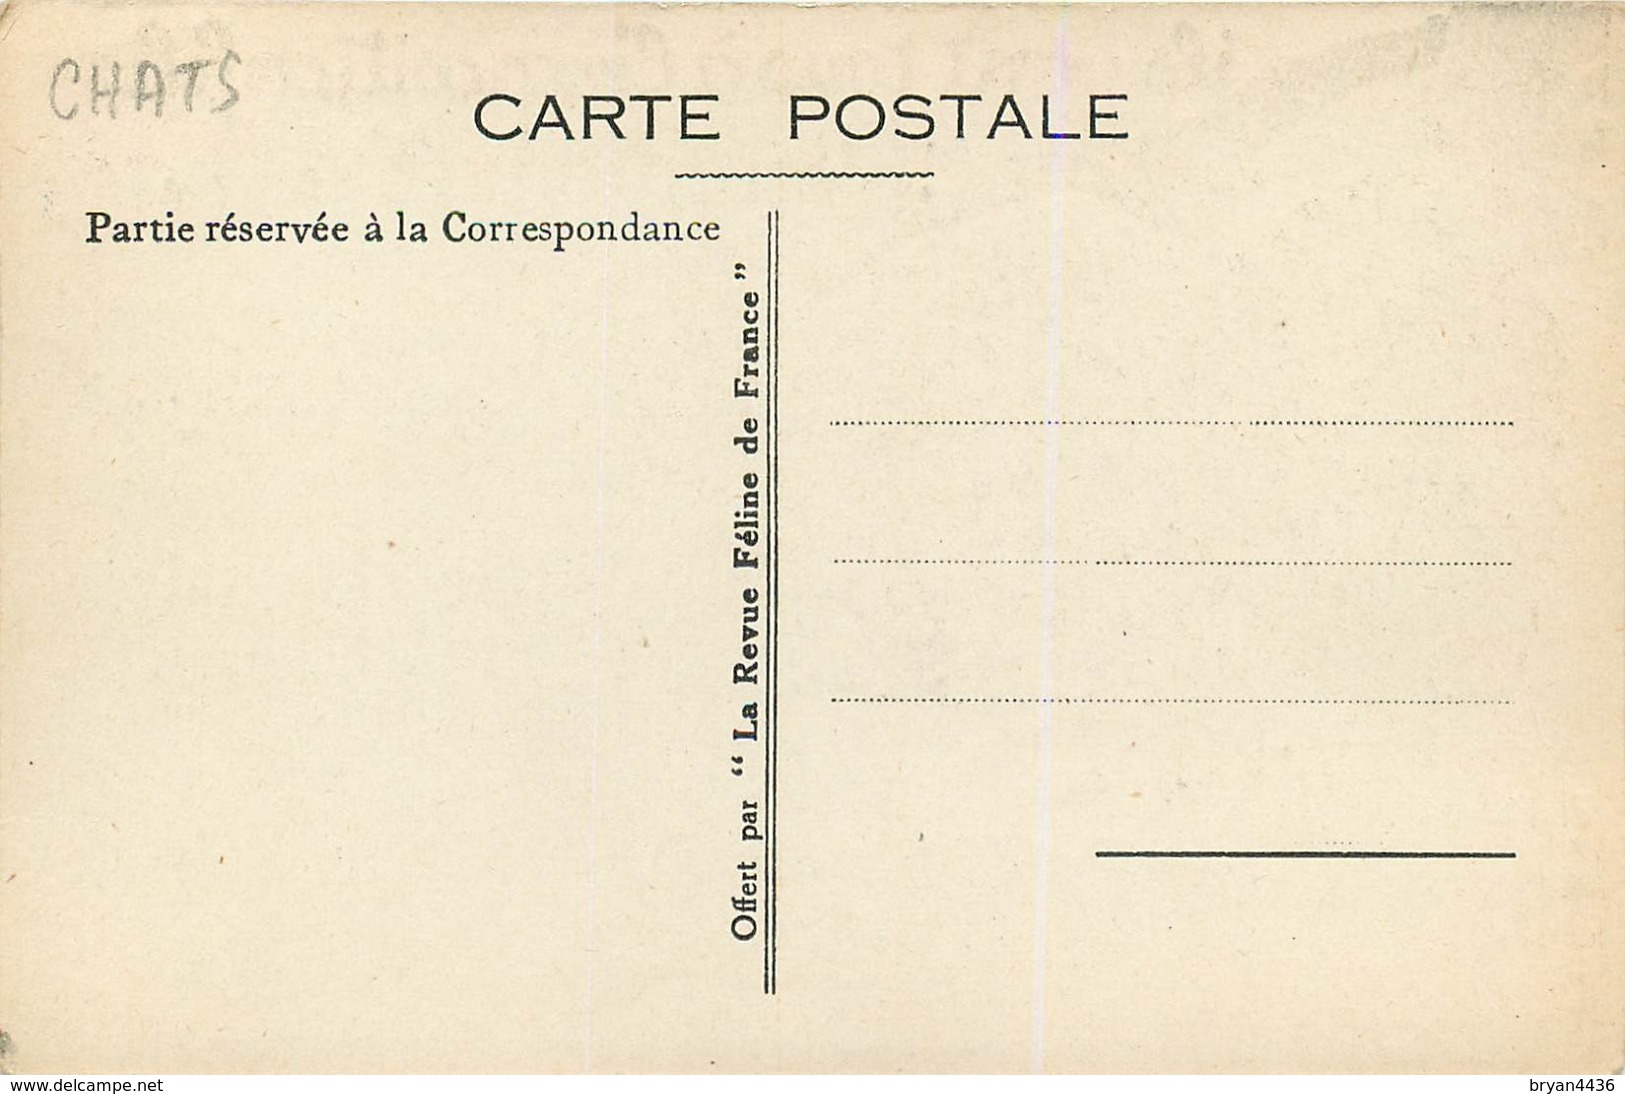 RARE - EXPOSITION FELINE INTERNARTIONAL DE PARIS - CHATS - CPA PUB - ILLUSTRATEUR; CASTHELAN - 1933 - TBE. - Chats